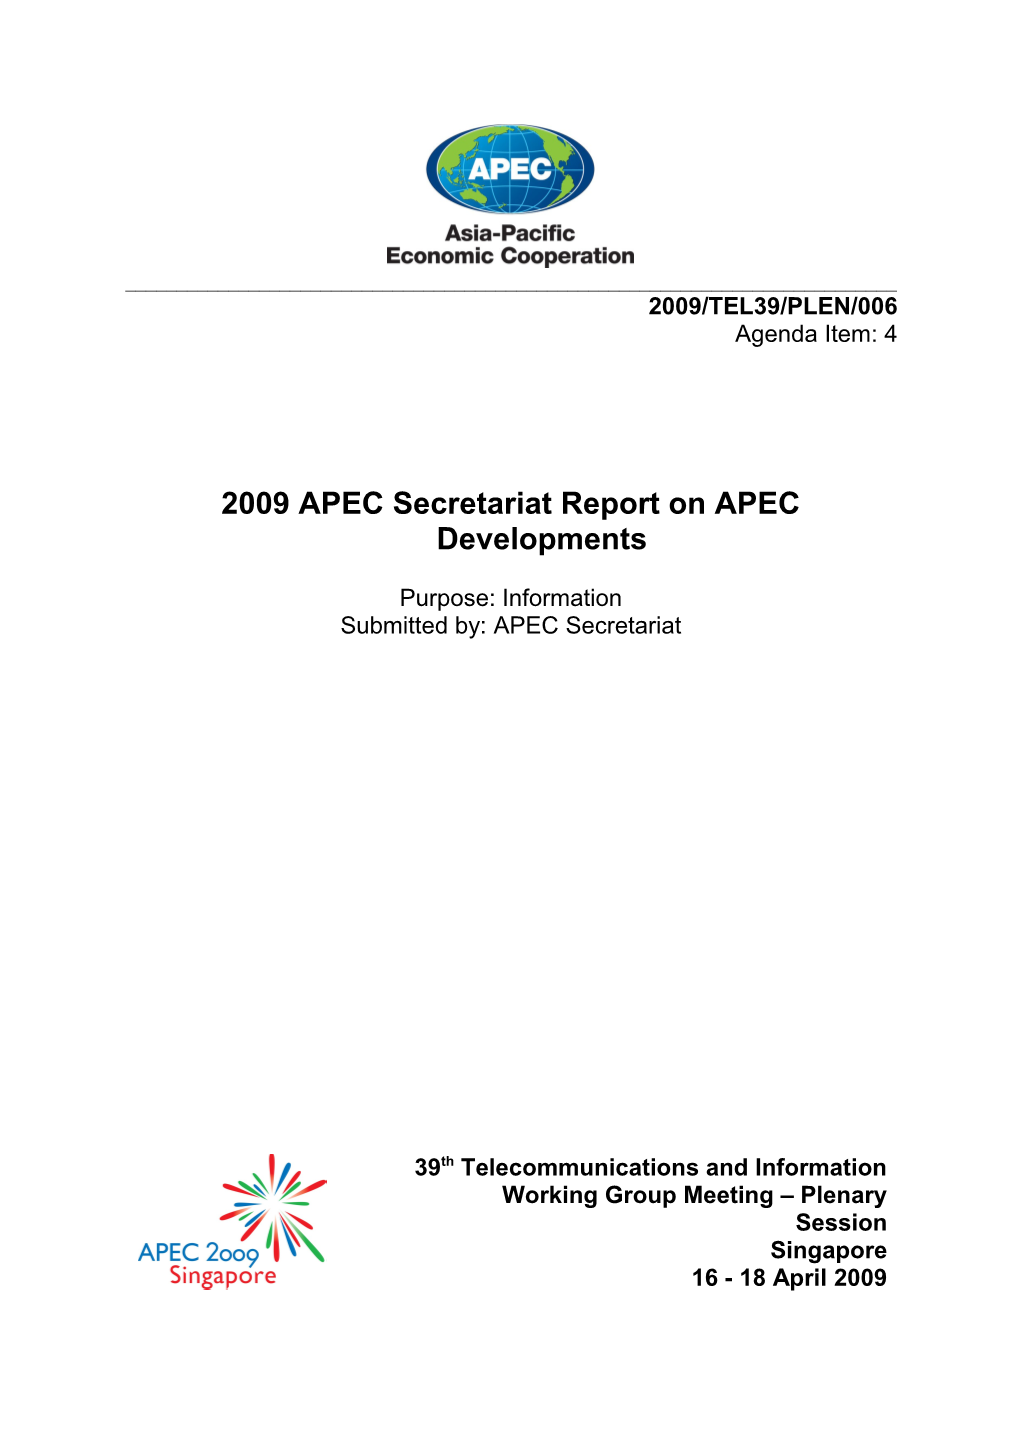 APEC Sec Rep on APEC Dev